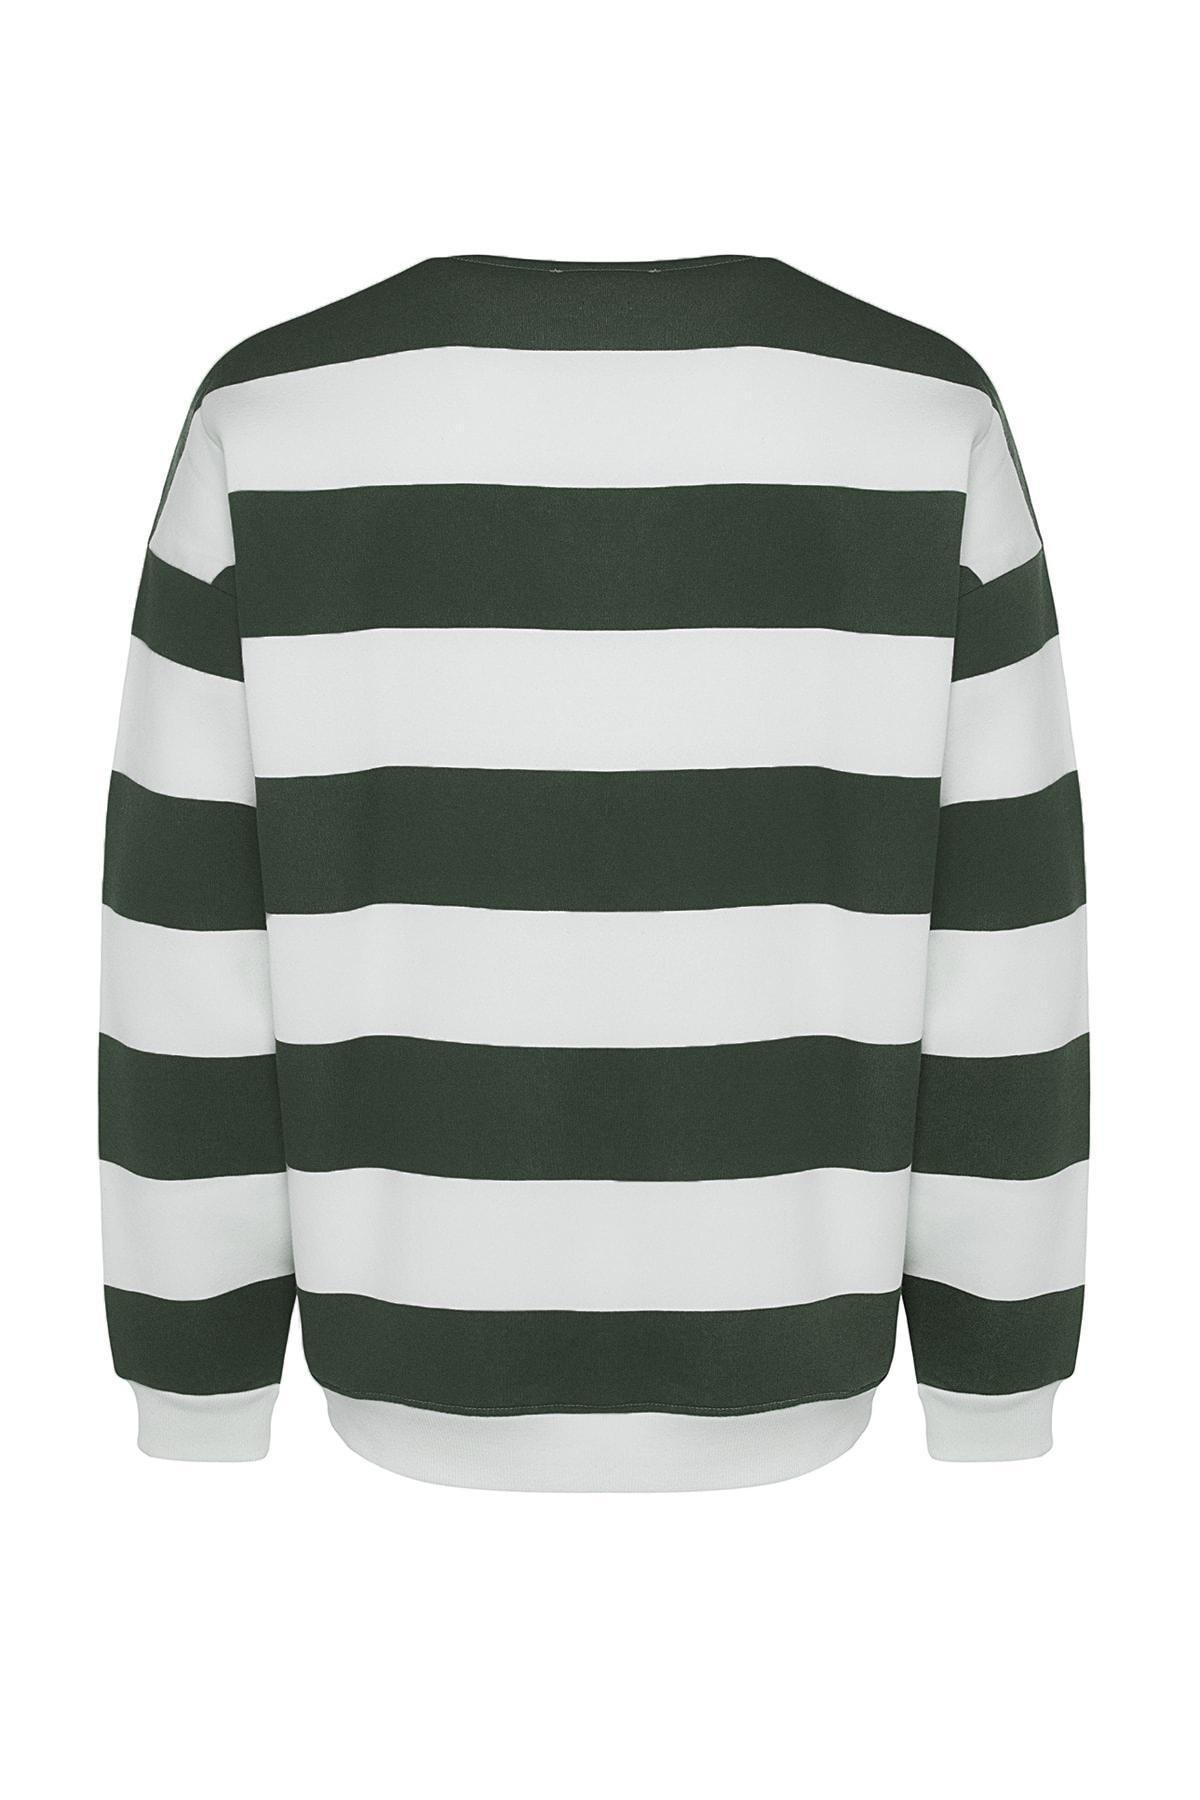 Trendyol - Green Striped Oversized Sweatshirt